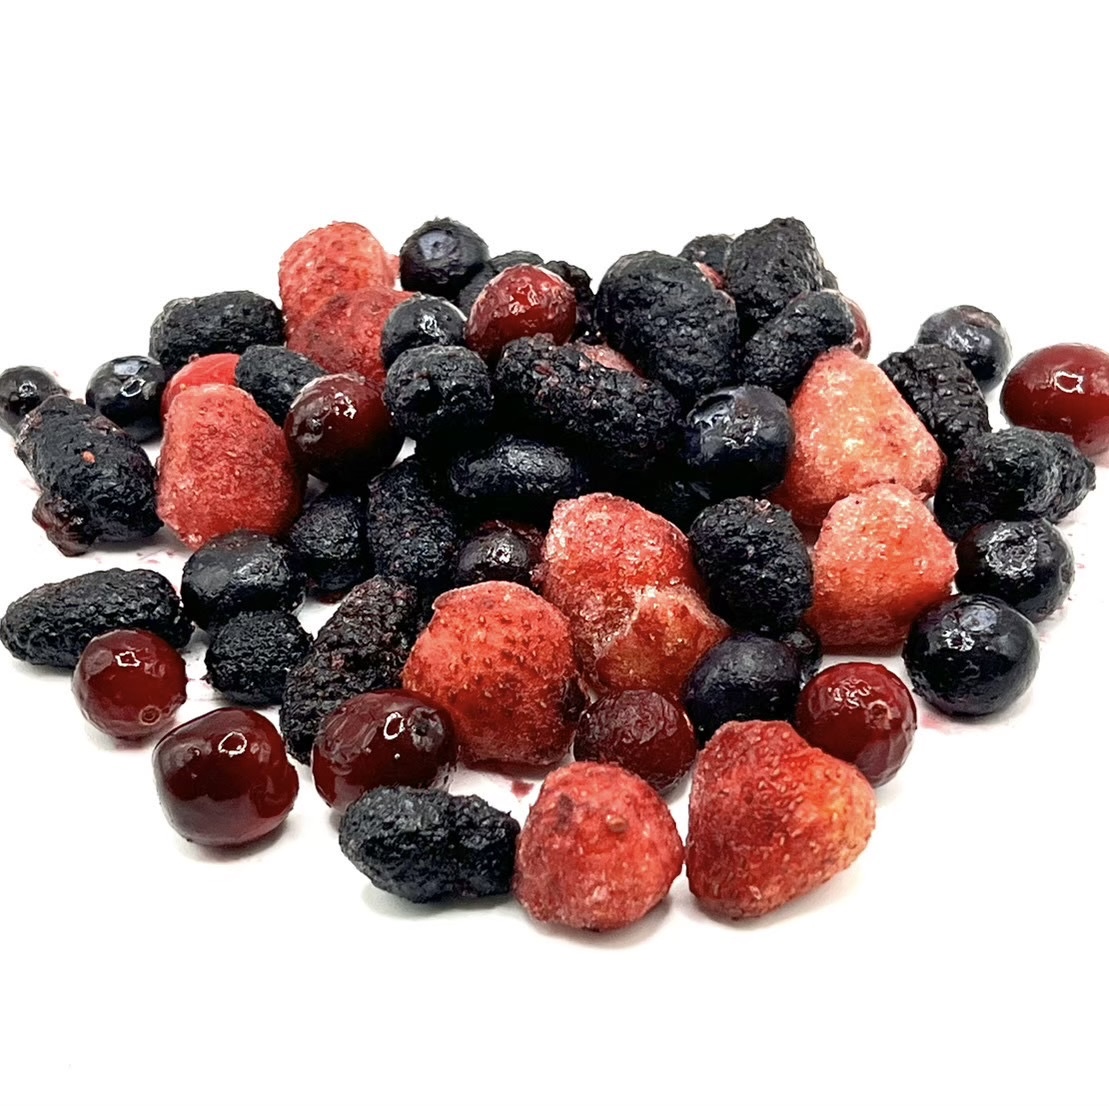 冷凍綜合莓果(蔓越莓、黑醋栗、藍莓、草莓、黑莓)